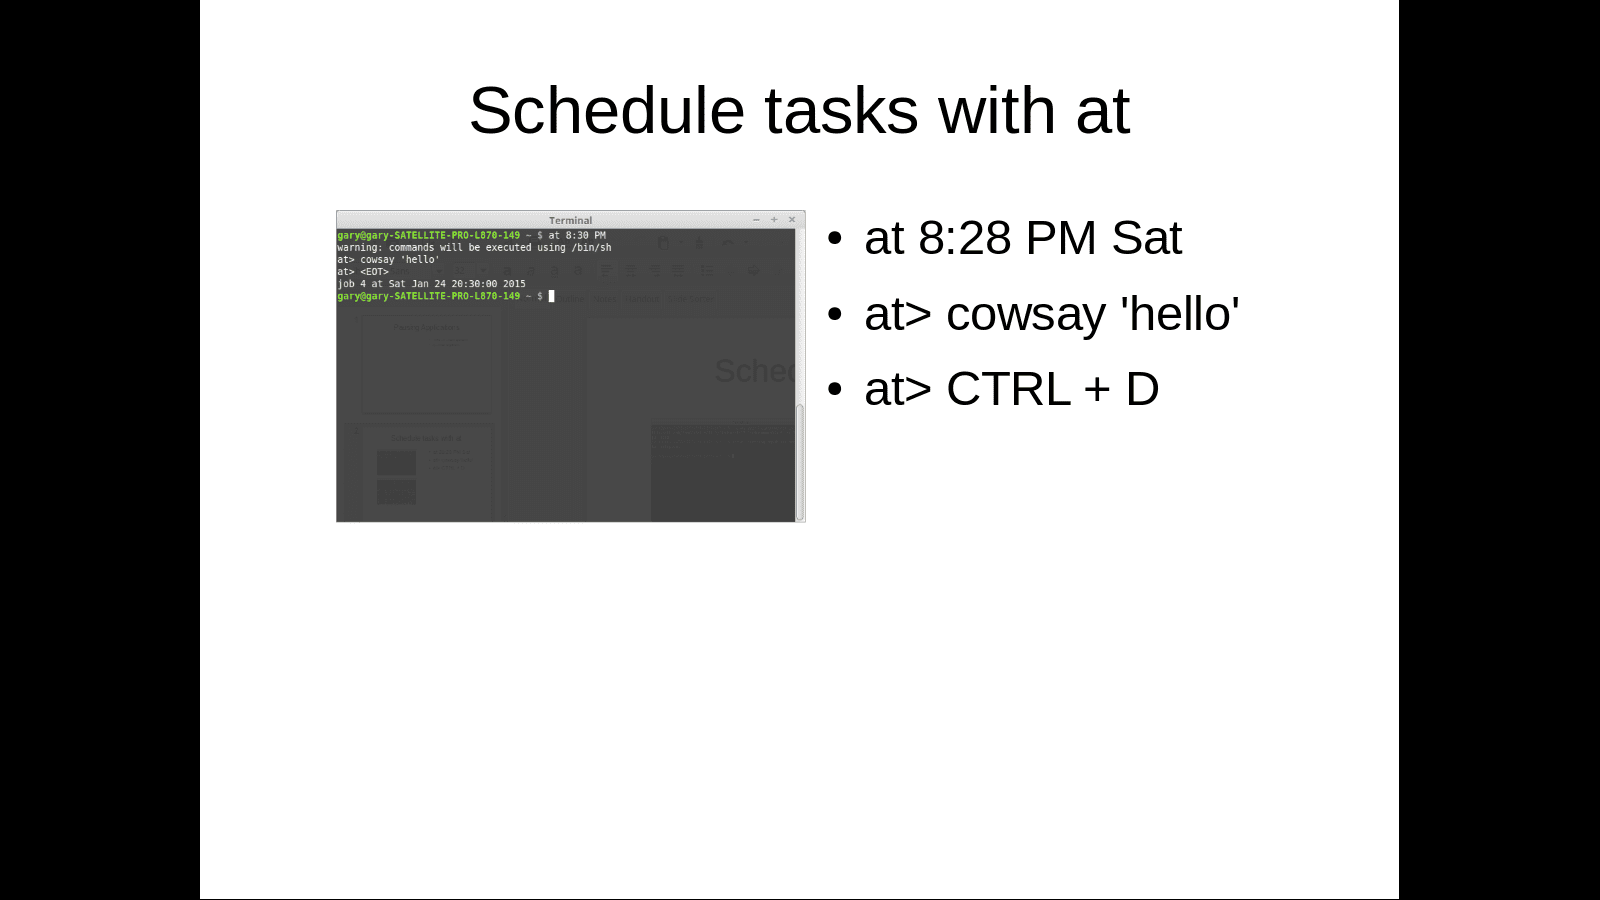 Agende tarefas com um comando por meio do terminal Linux